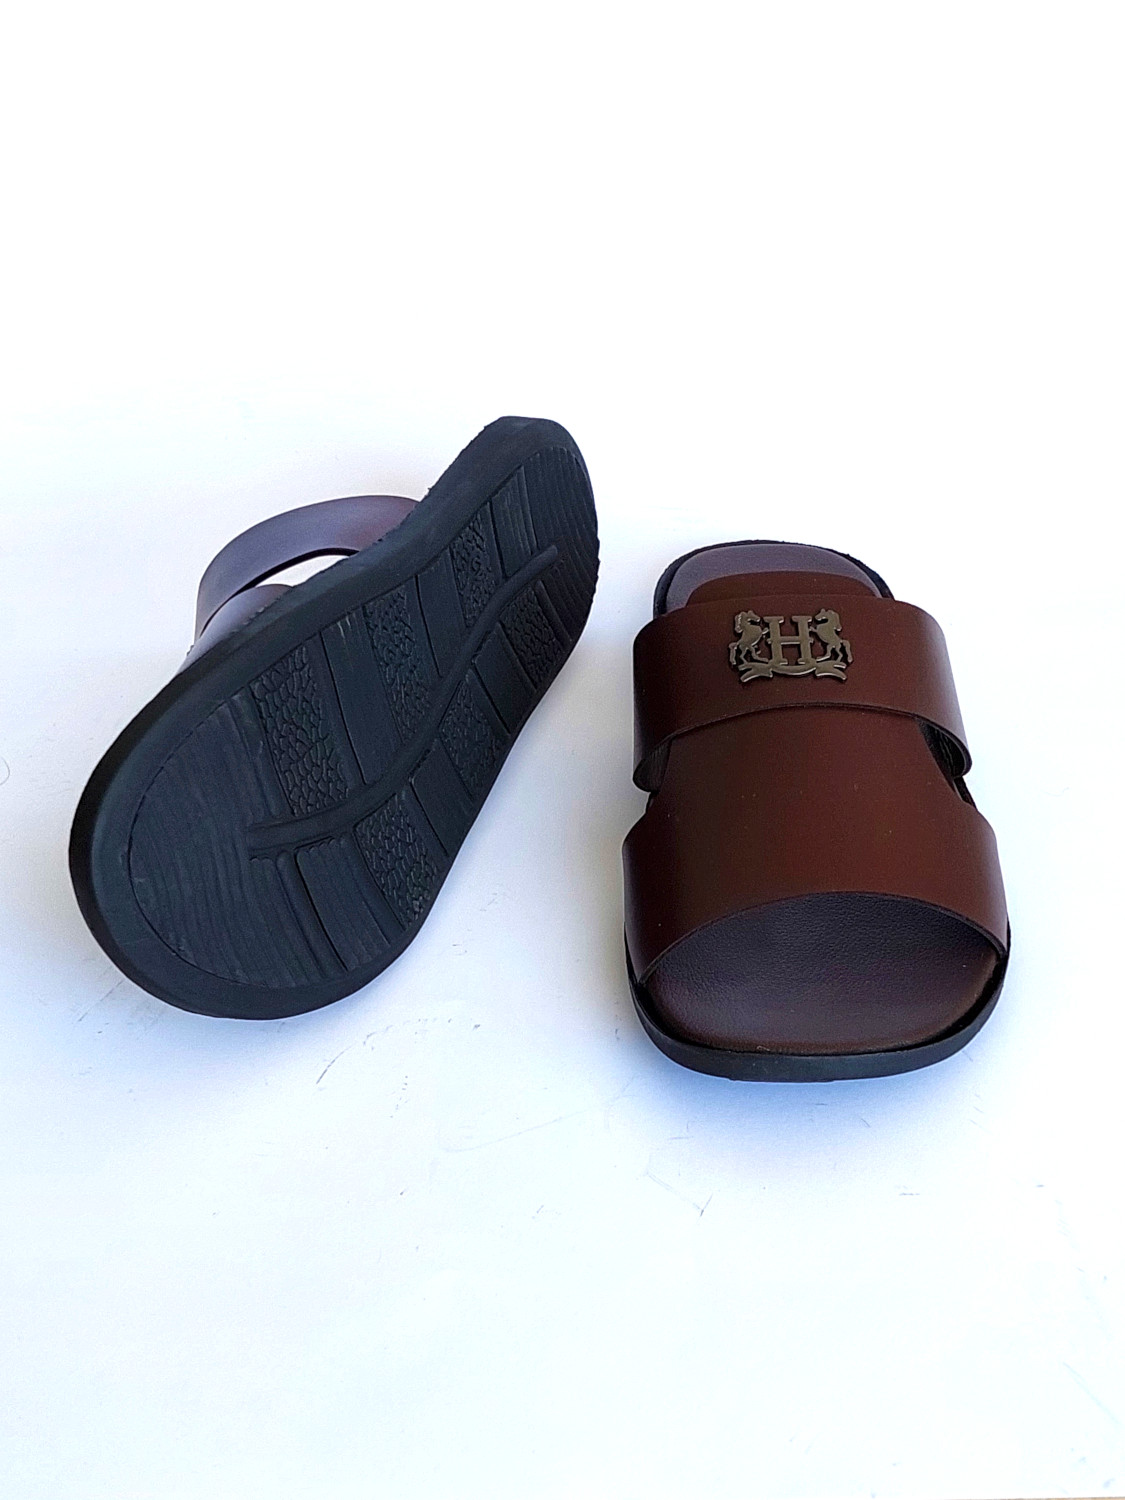 FHMS02-Branded Modern Luxury Slippers For Men - Brown - Frenzy